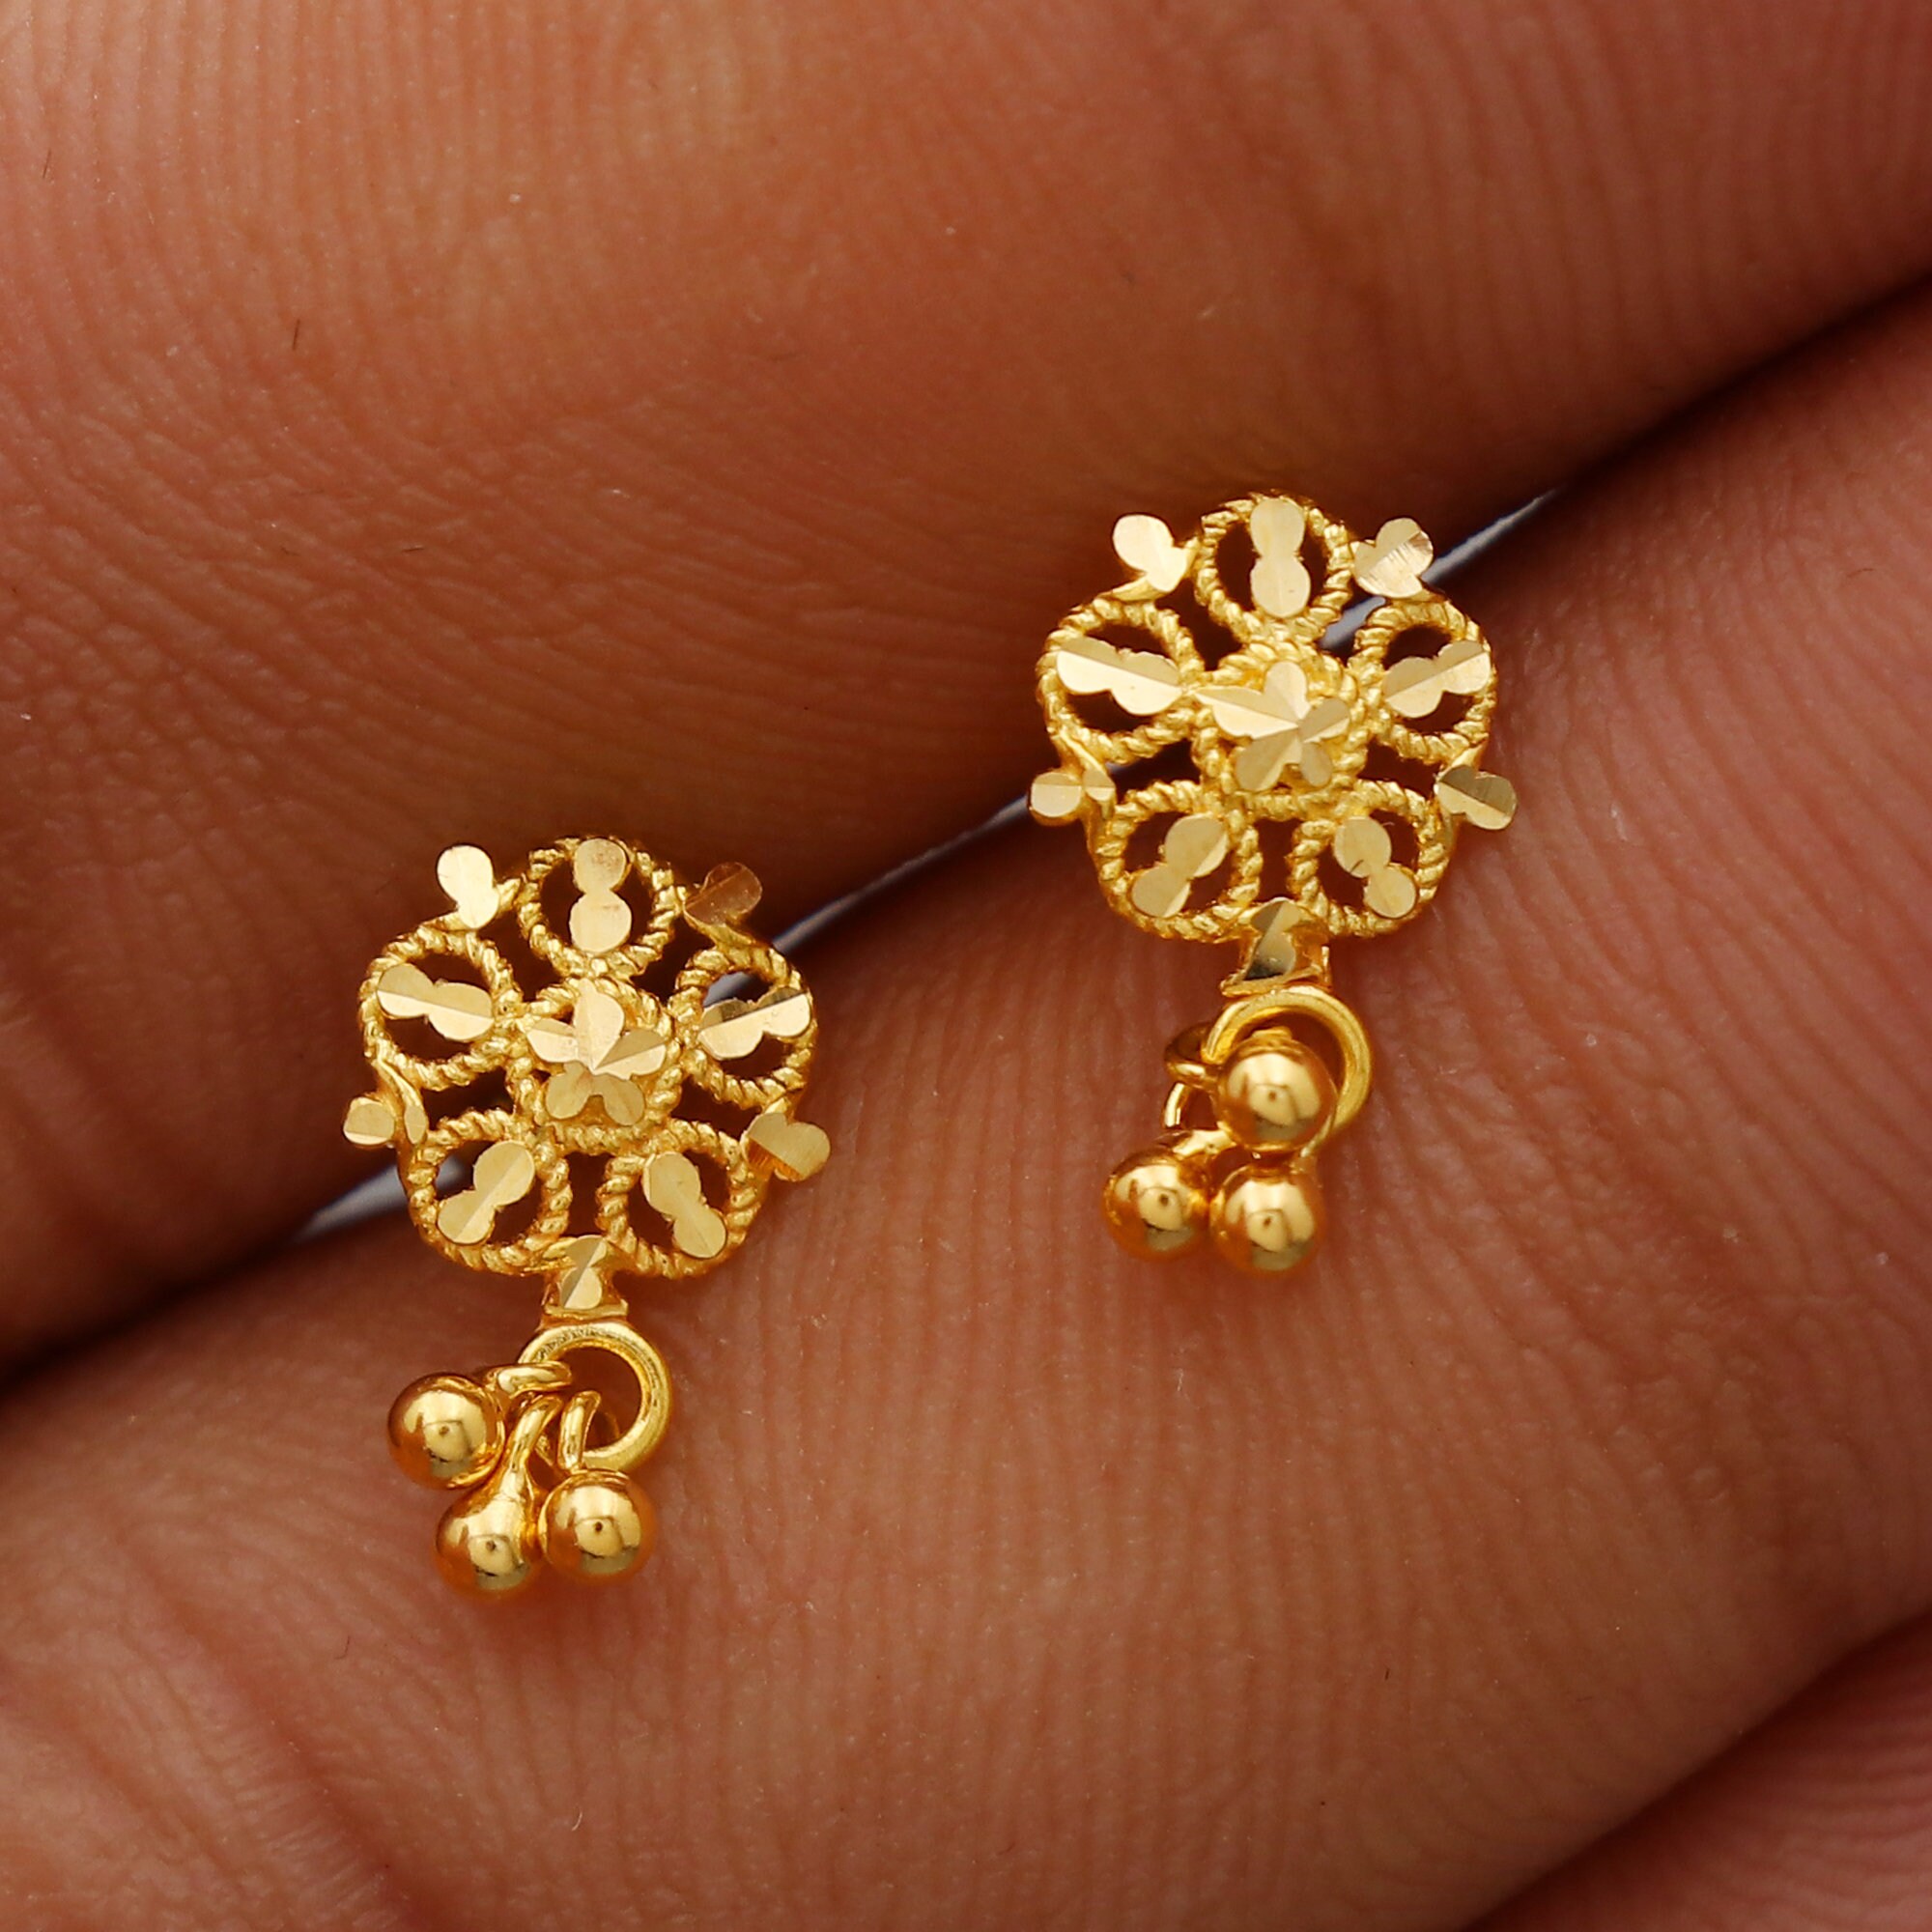 22 Karat Gold Earrings Latest Design 2024 : जन्नत की परियों वाली खूबसूरती  देने के लिए बेस्ट है ये गोल्ड इयररिंग के लेटेस्ट डिजाइन